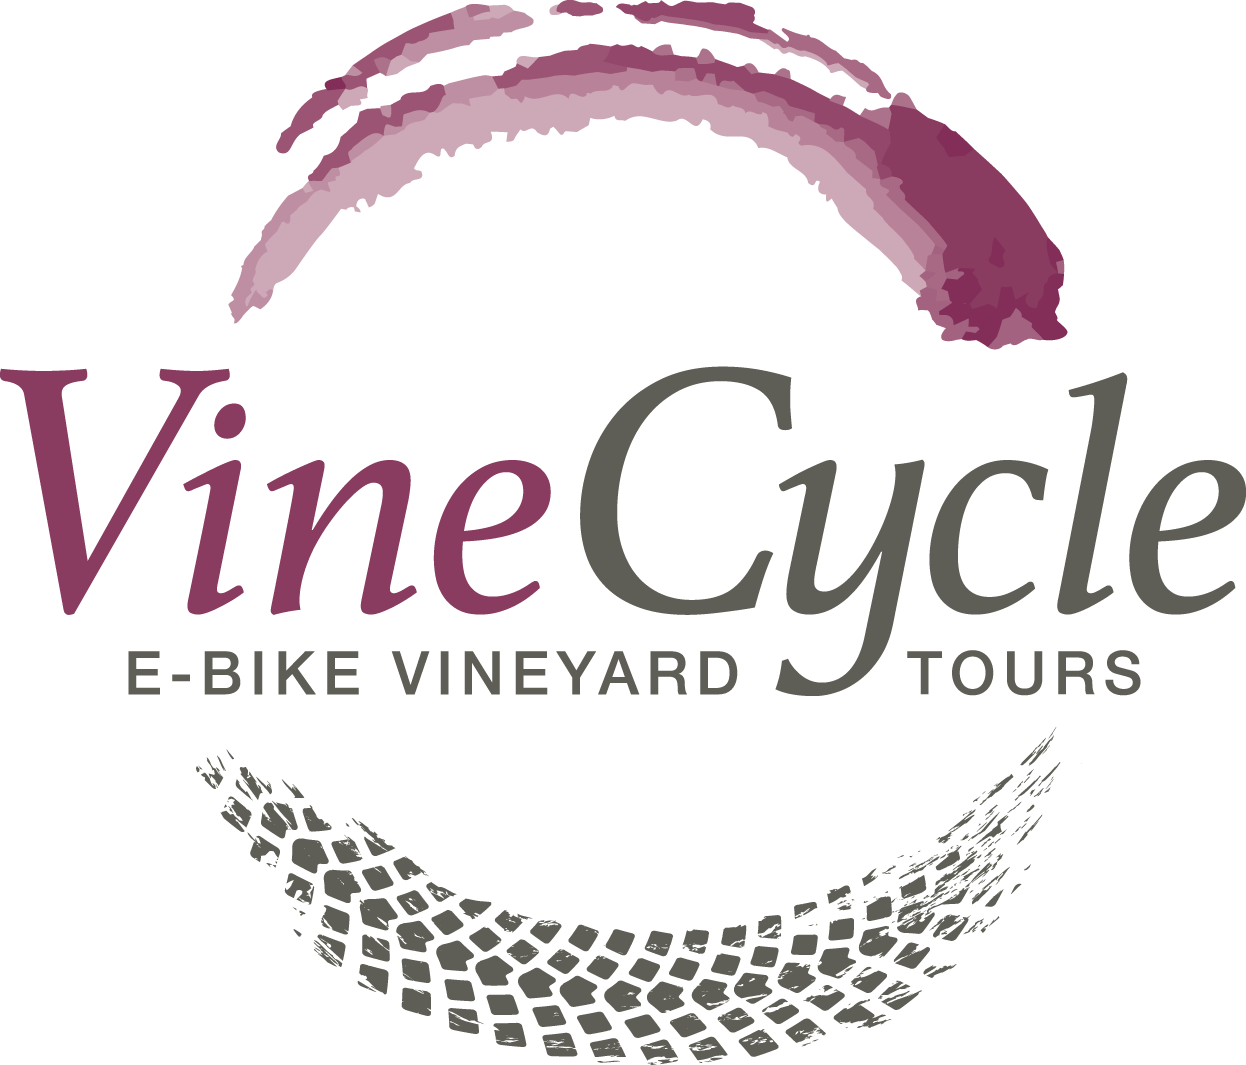 VineCycle e-Bike Vineyard Tours